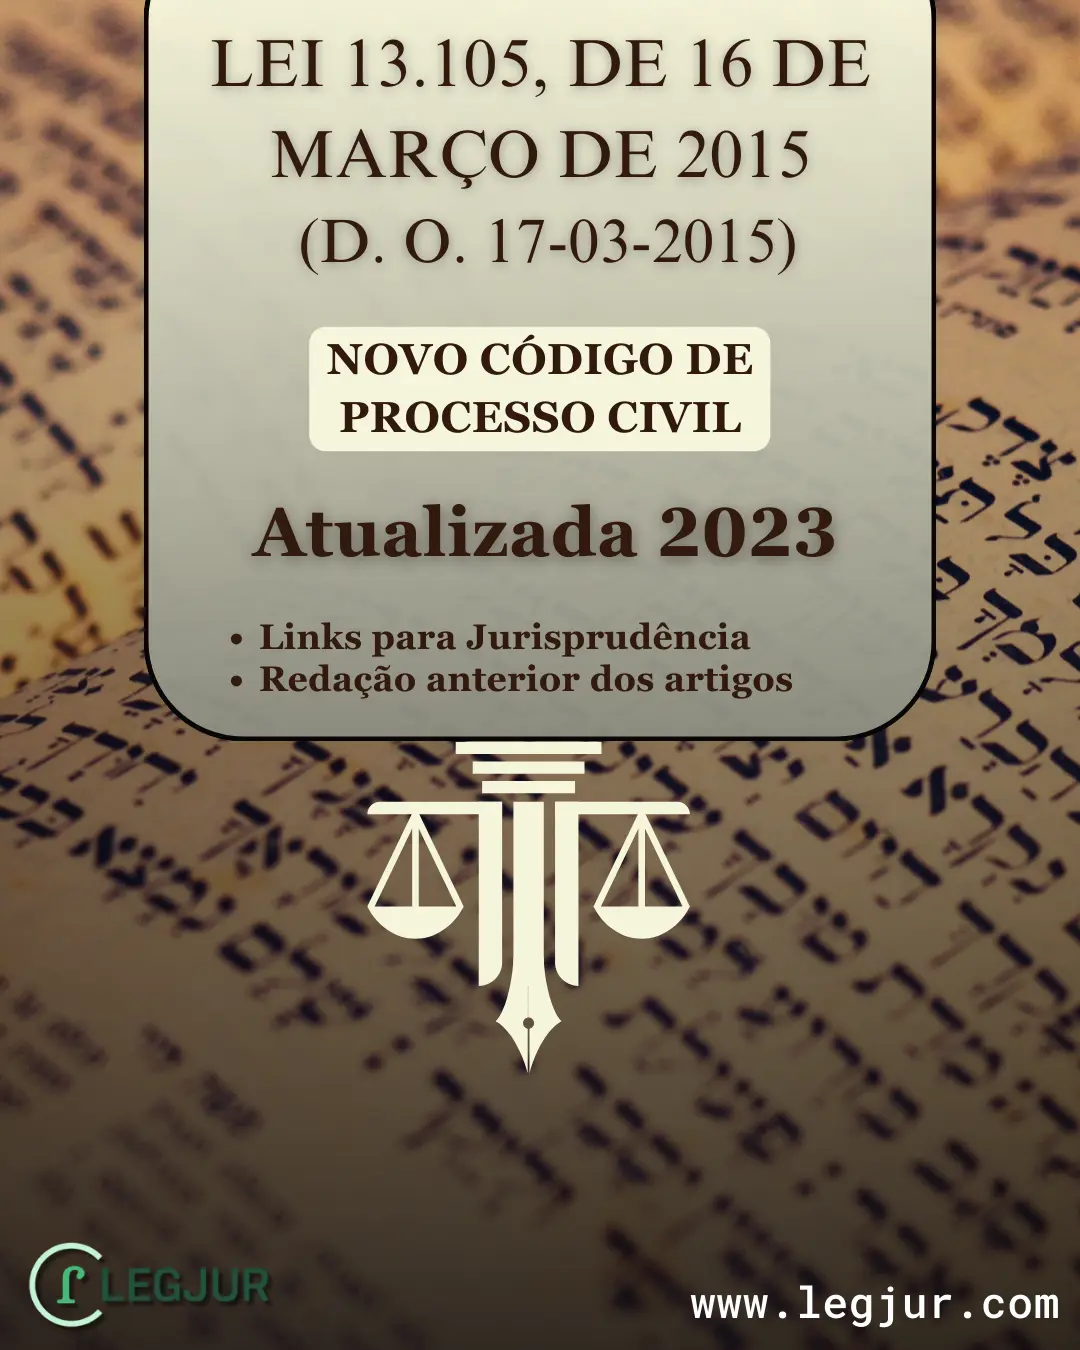 Novo Código de Processo Civil 2015: Guia Prático e Atualizado 2023